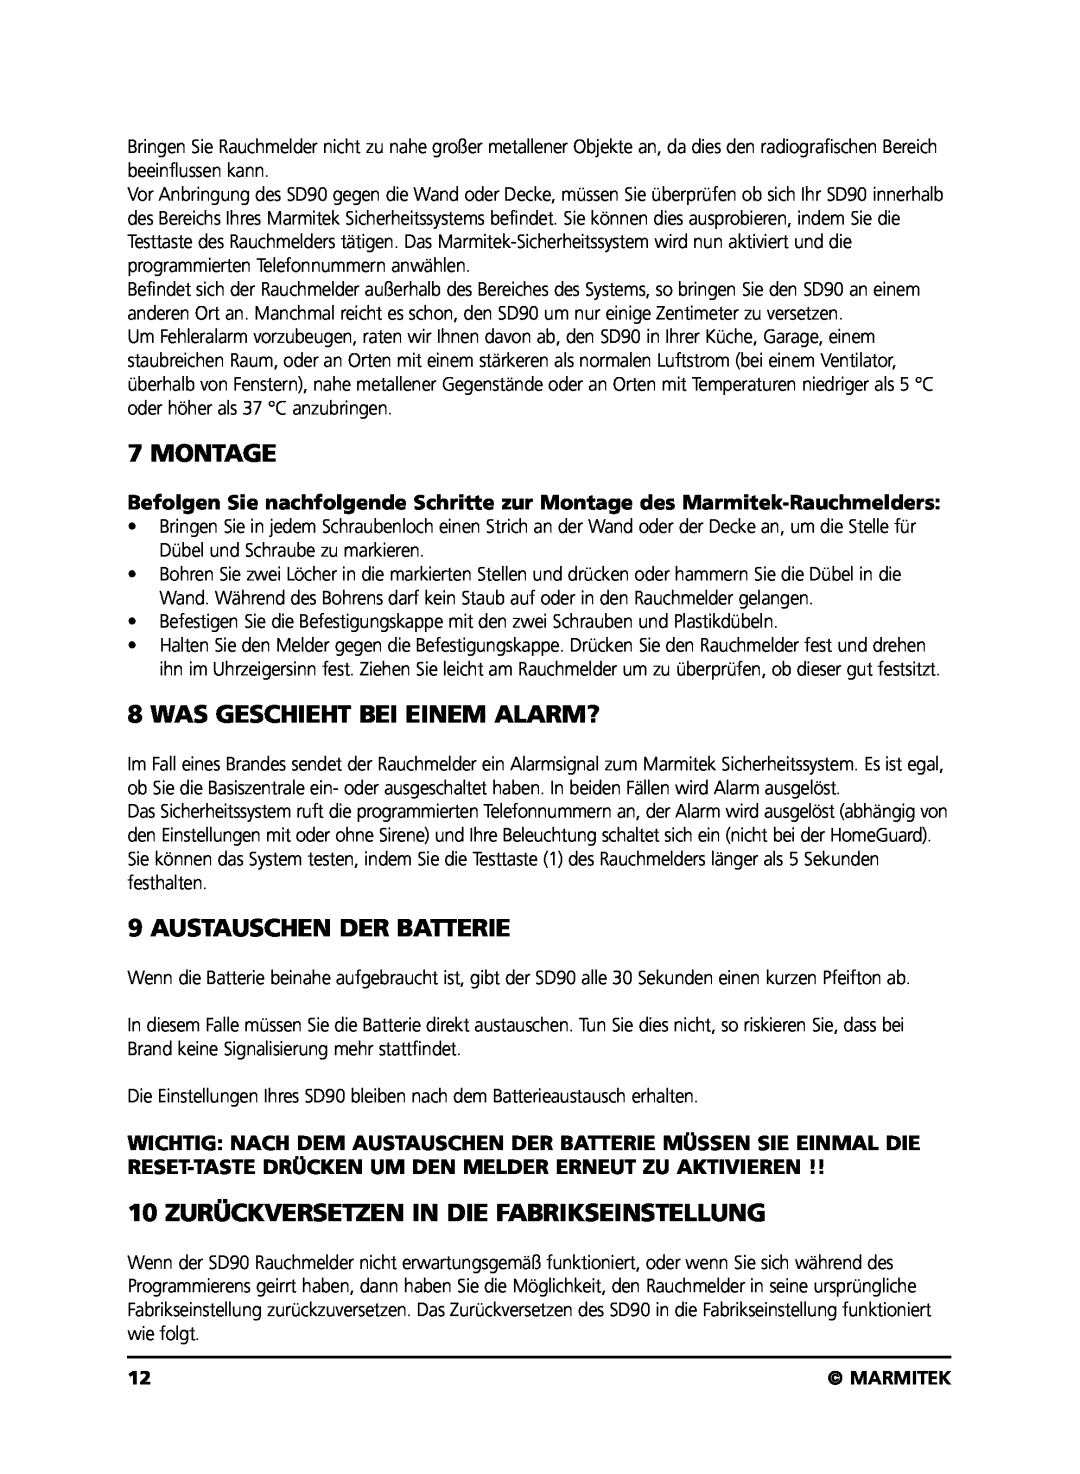 Marmitek SD90 user manual Montage, Was Geschieht Bei Einem Alarm?, Austauschen Der Batterie, Marmitek 